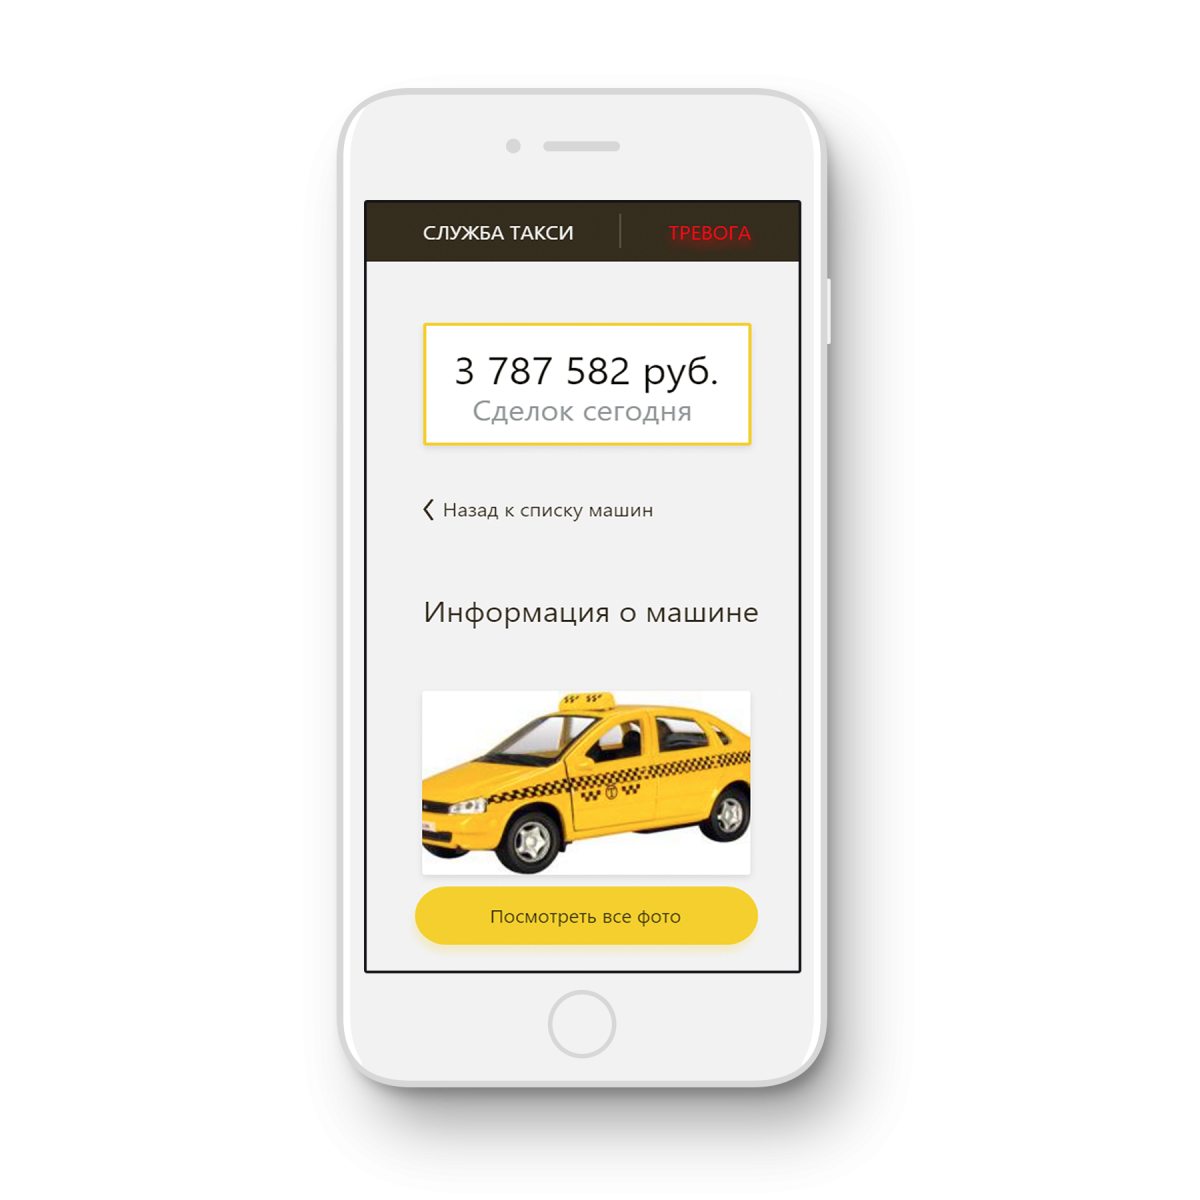 Вызвать такси в рязани. Приложение такси. Реклама приложения такси. Мобильное приложение такси.